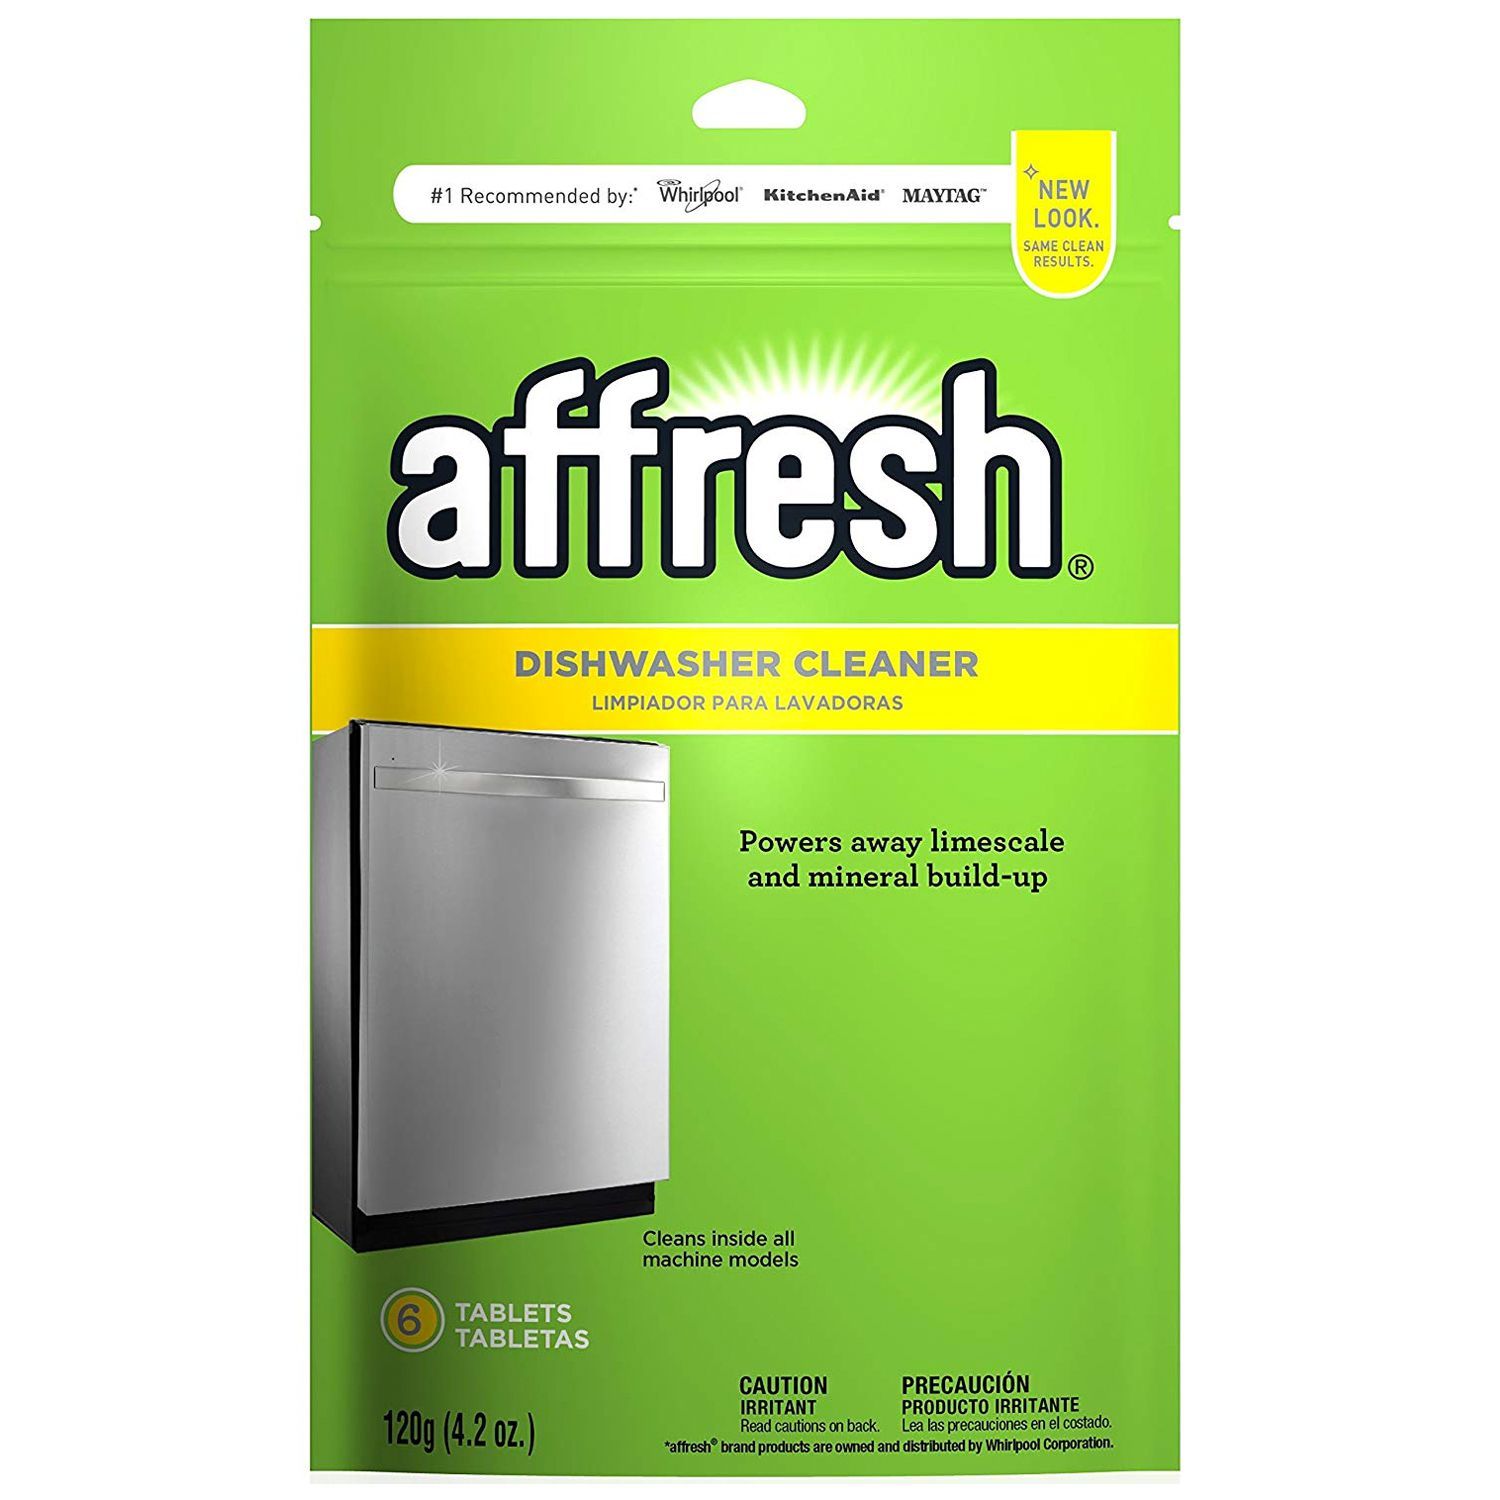 Affresh Dishwasher Cleaner